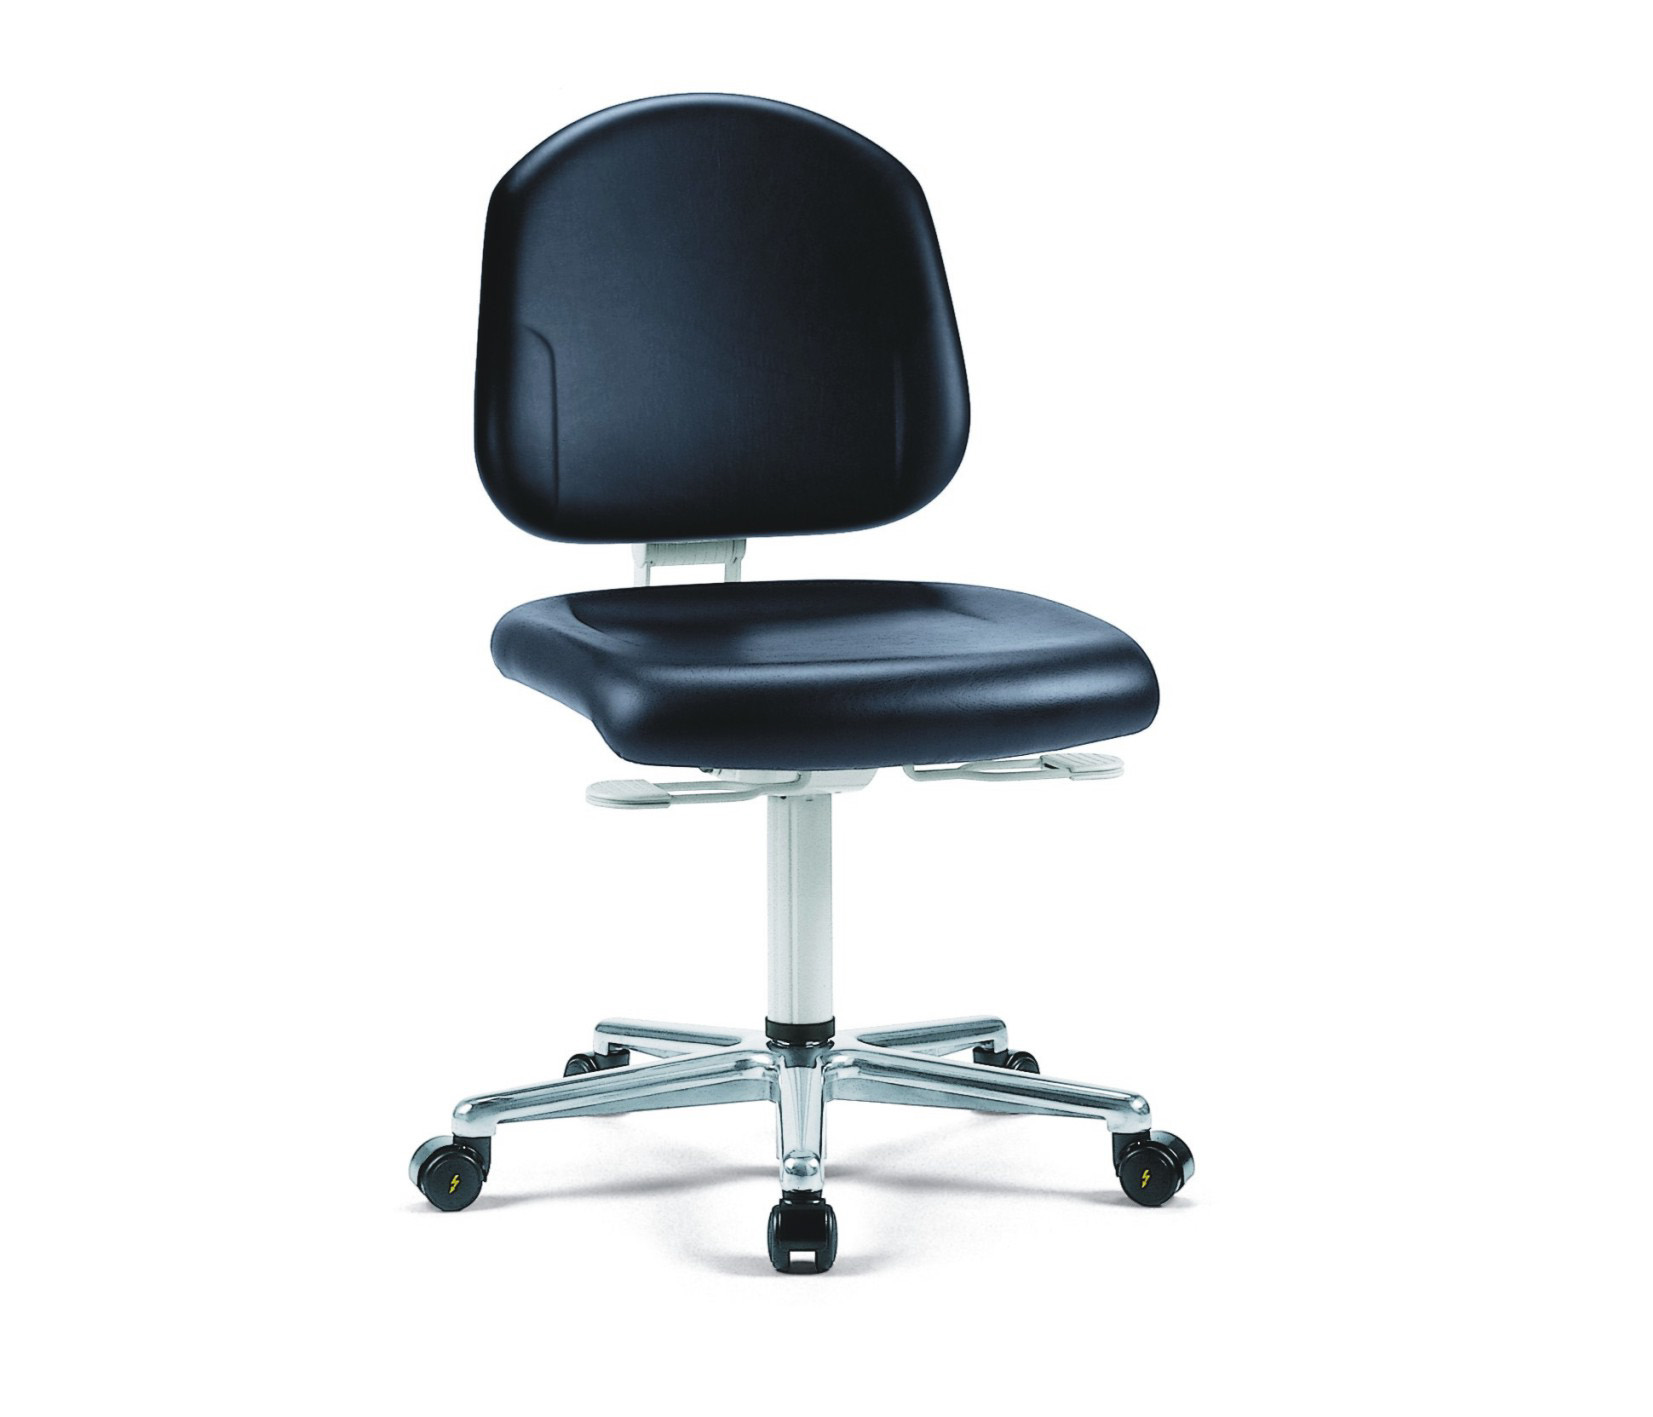 Chaise de salle blanche Plus avec roulettes, dossier bas, classe de salle blanche ISO 3